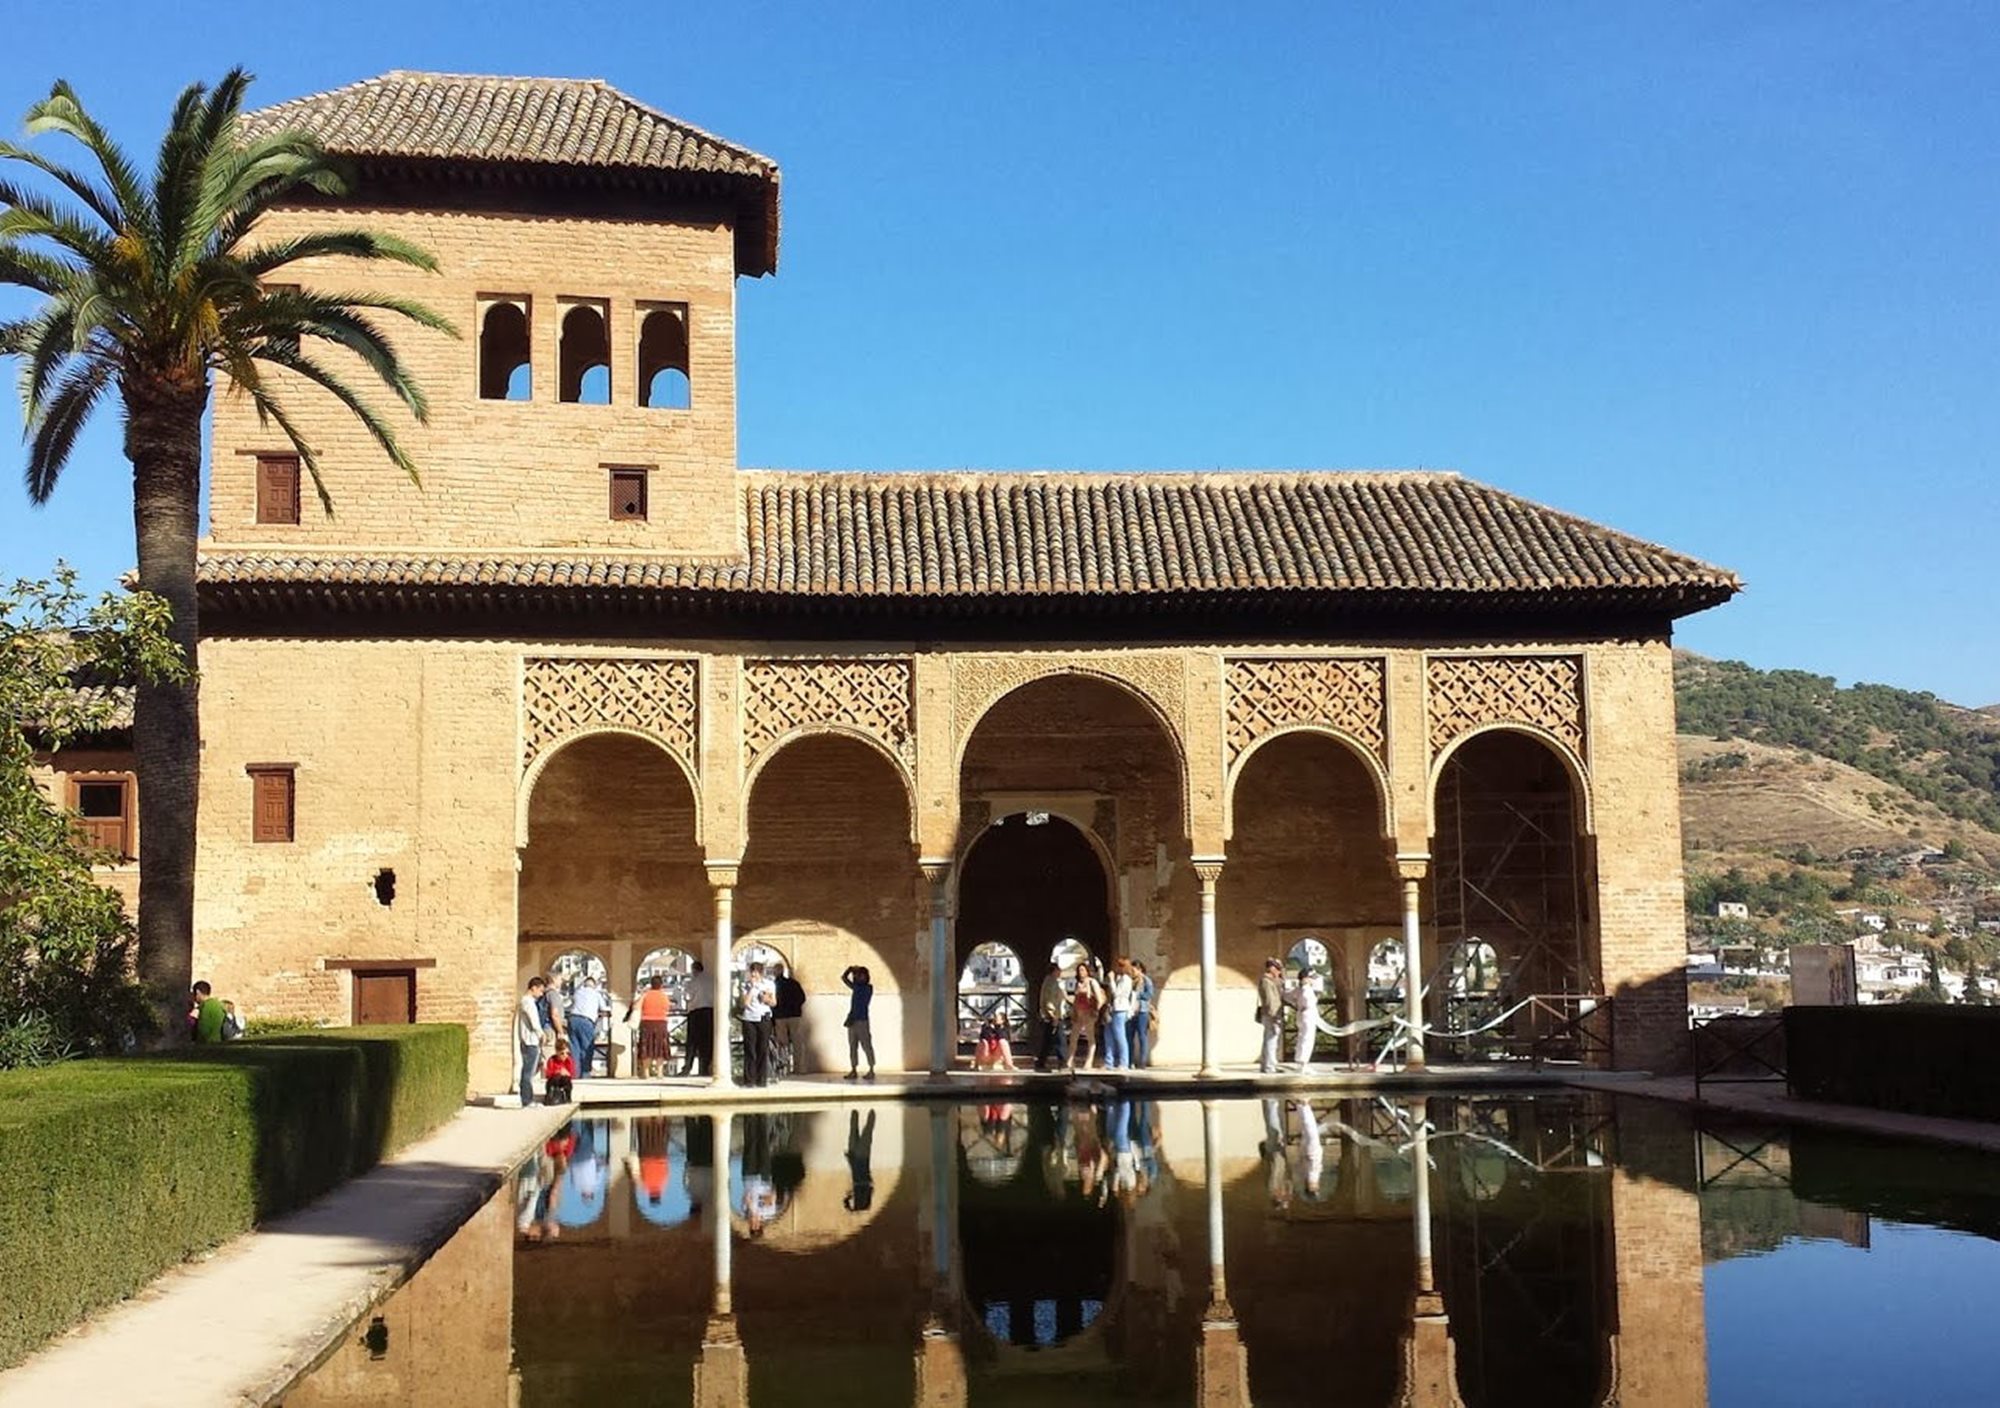 Visita guiada a la Alhambra Palacios Nazaríes y Generalife con entradas incluidas